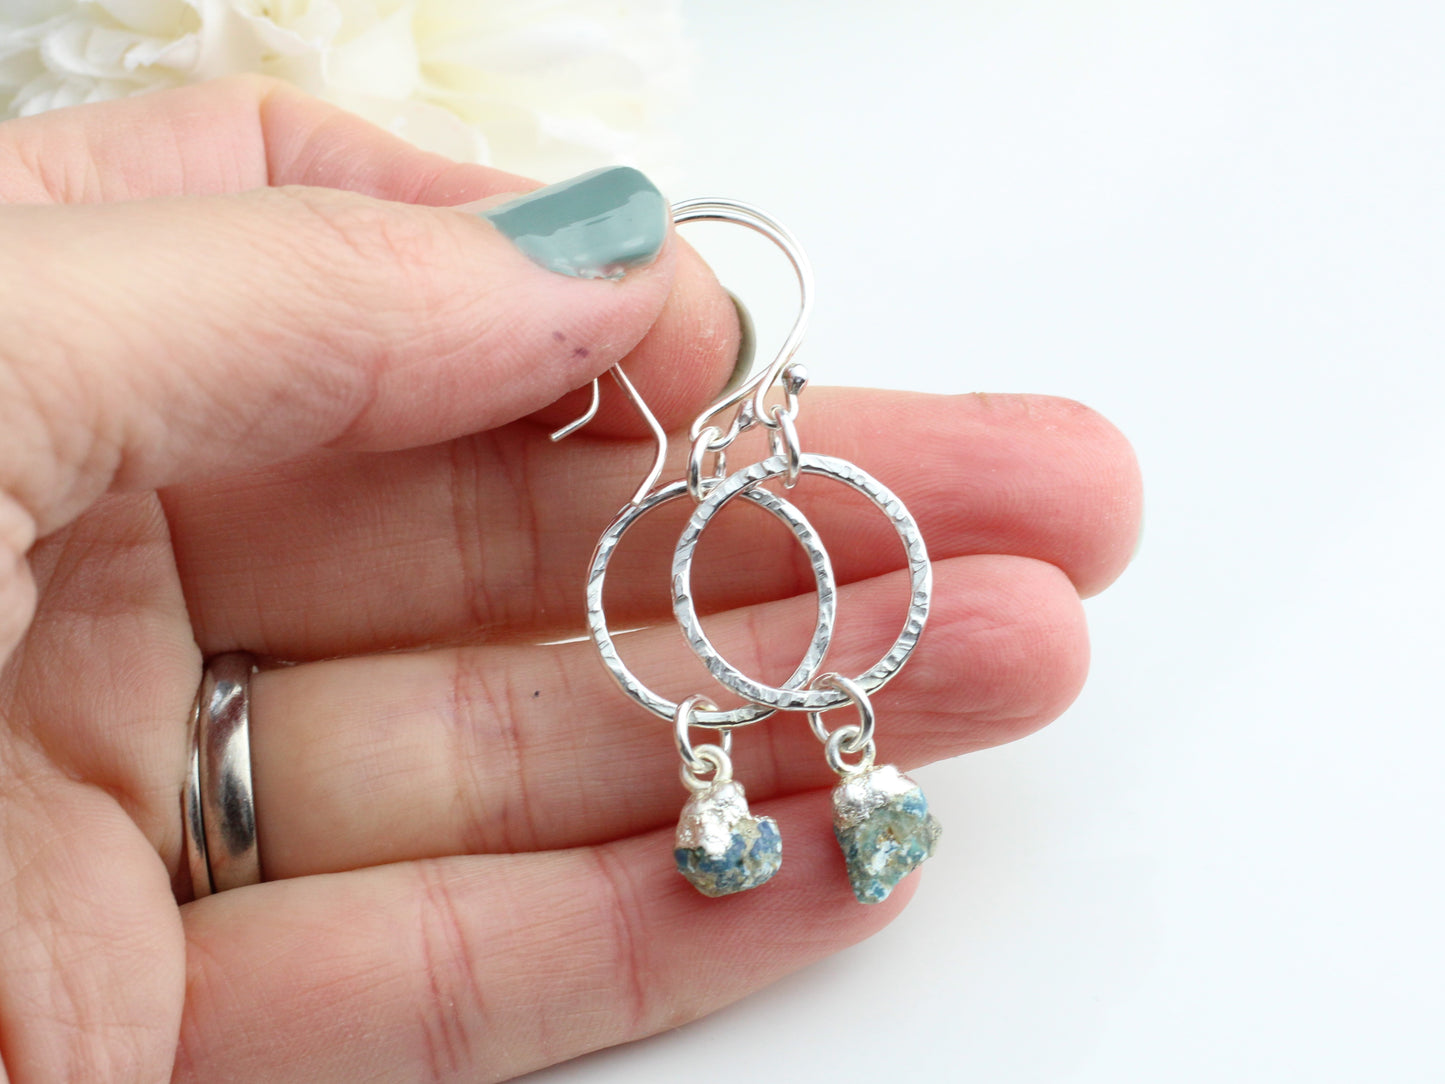 Turquoise hoop earrings in sterling silver. December birthstone earrings.